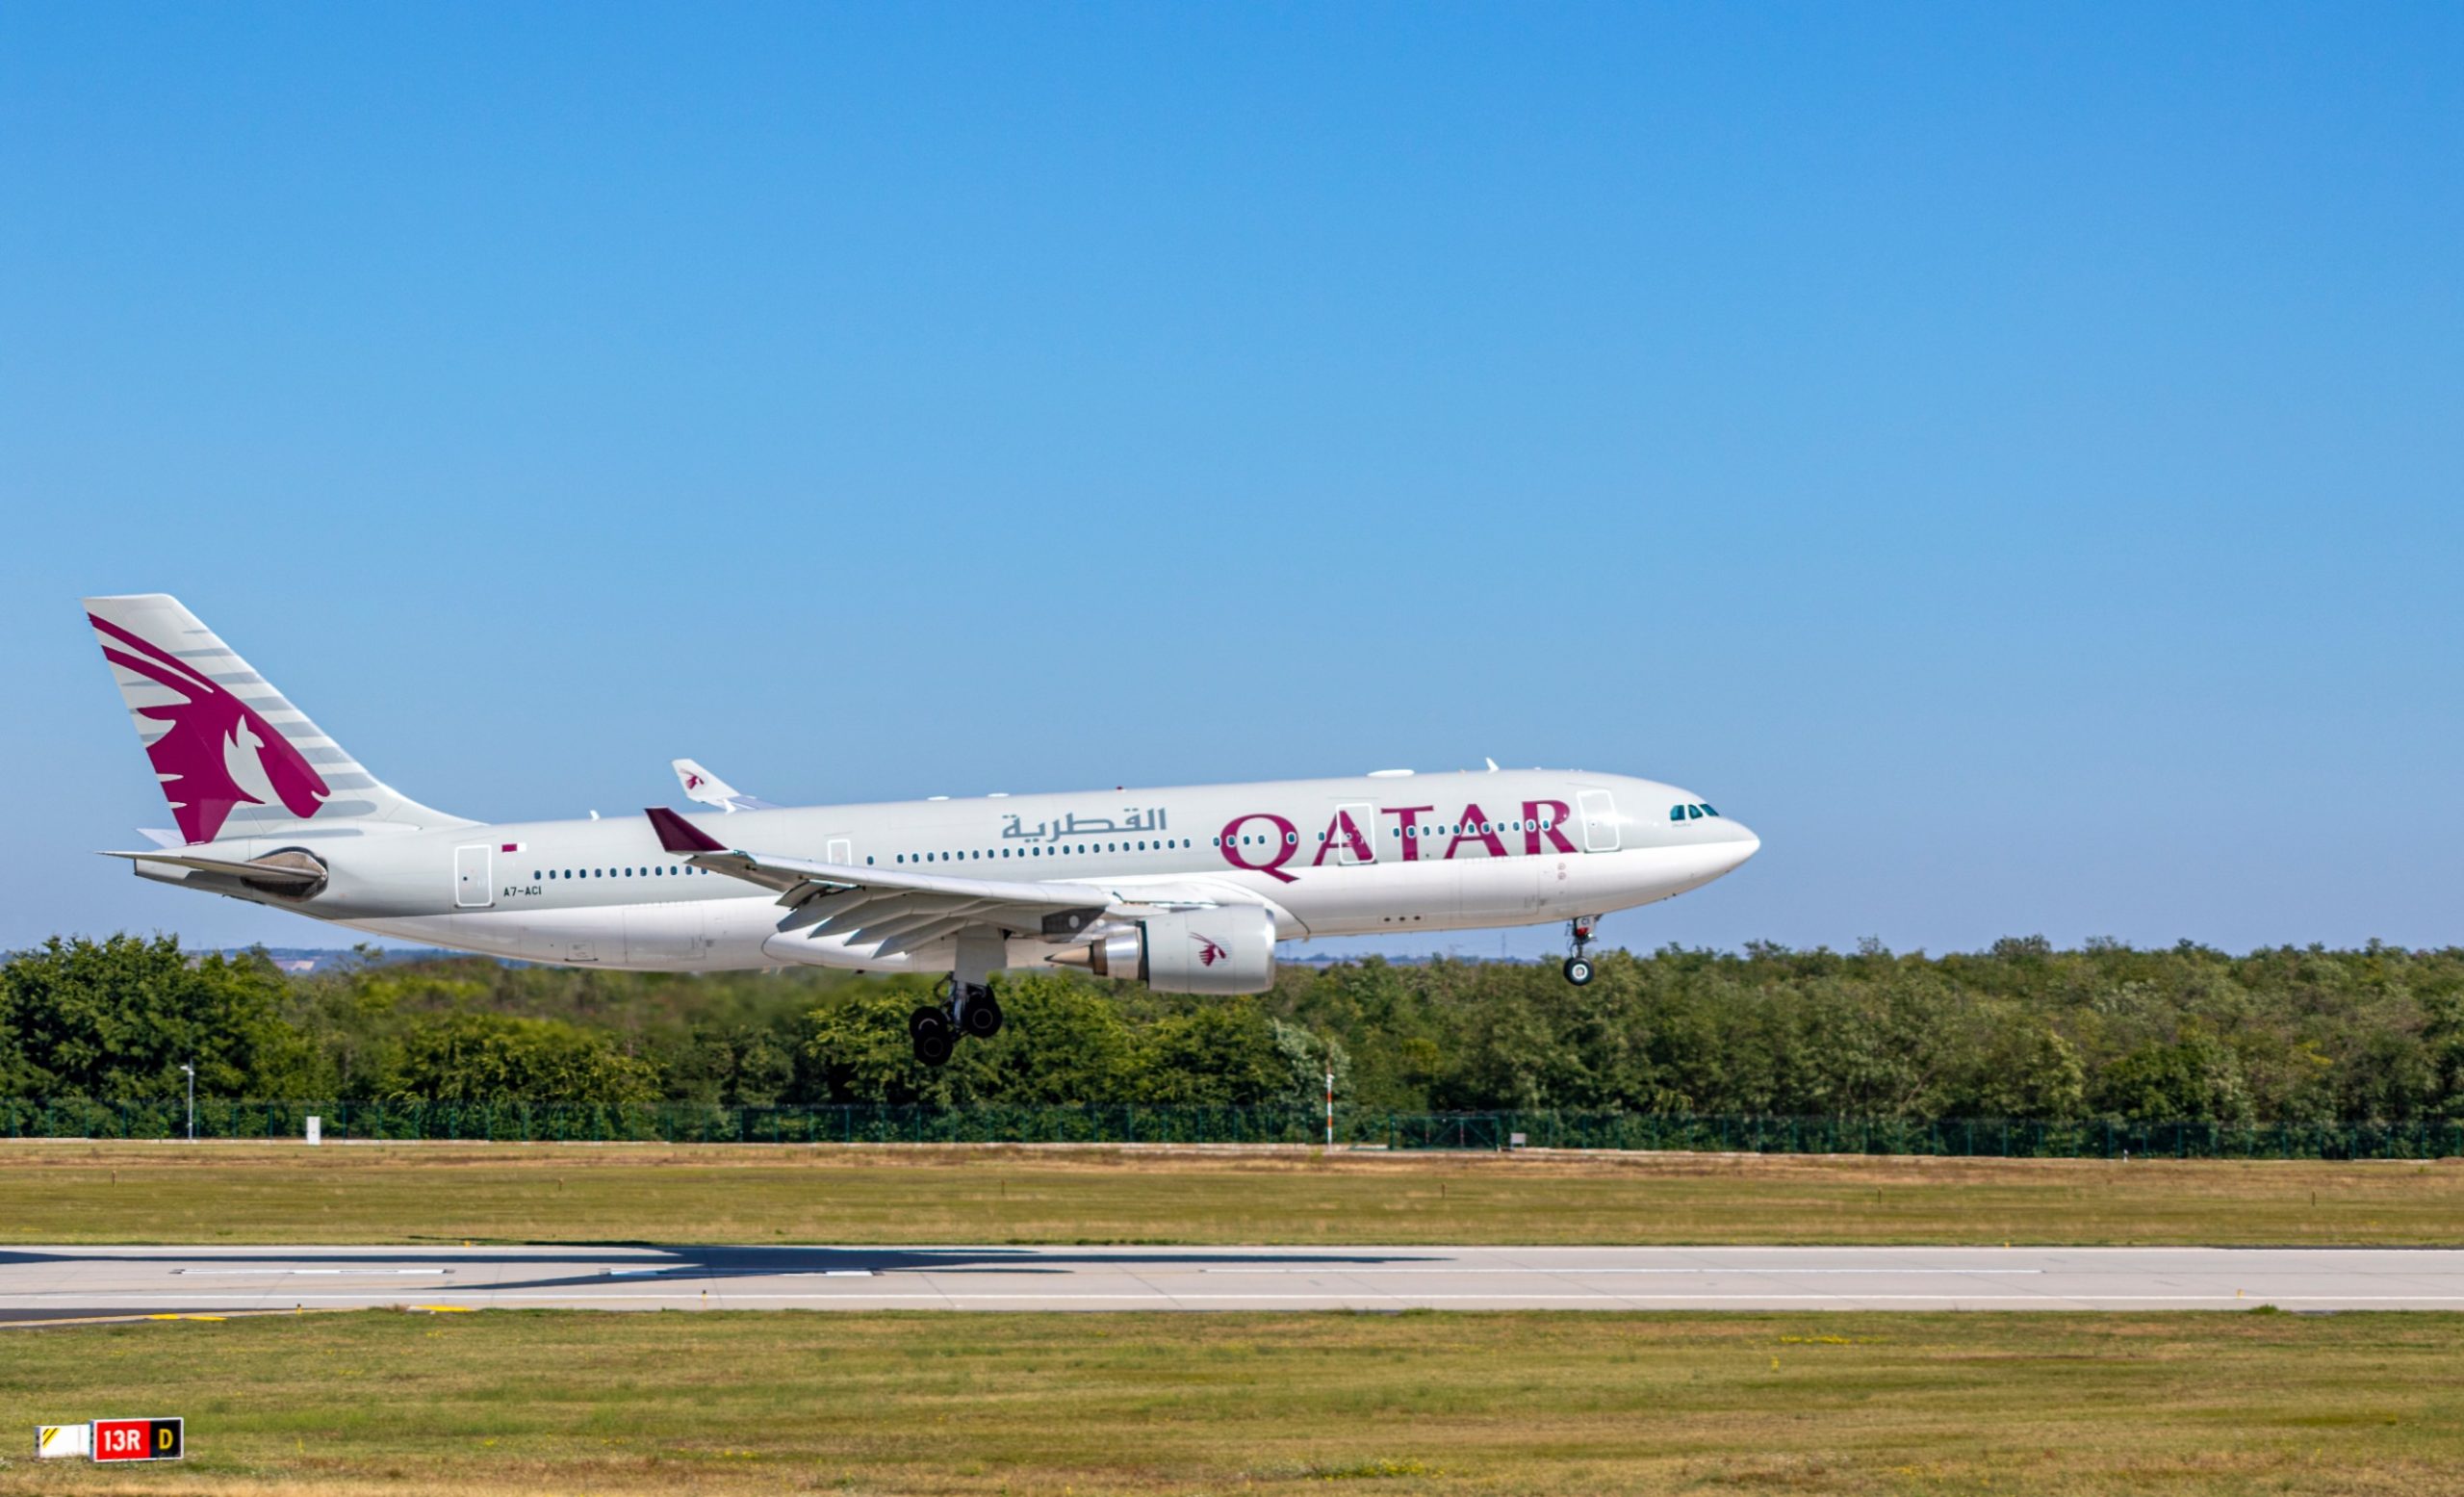 Qatar Airways et Google Cloud Strike Data, un partenariat d’intelligence artificielle